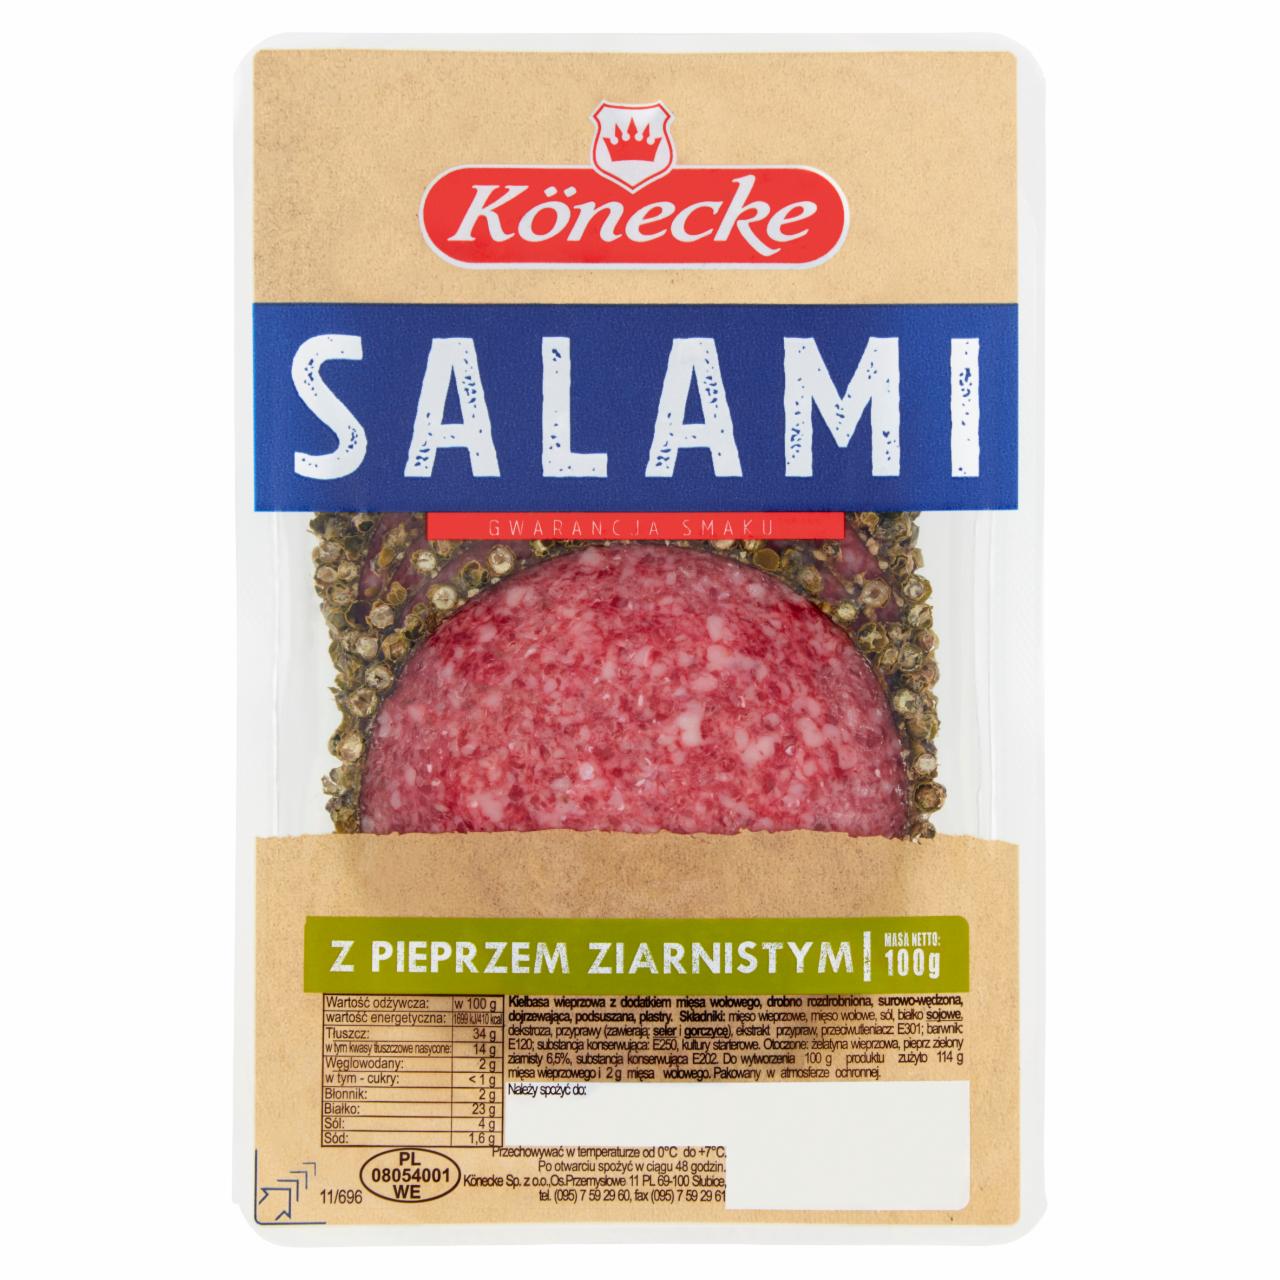 Zdjęcia - Salami z pieprzem ziarnistym Könecke